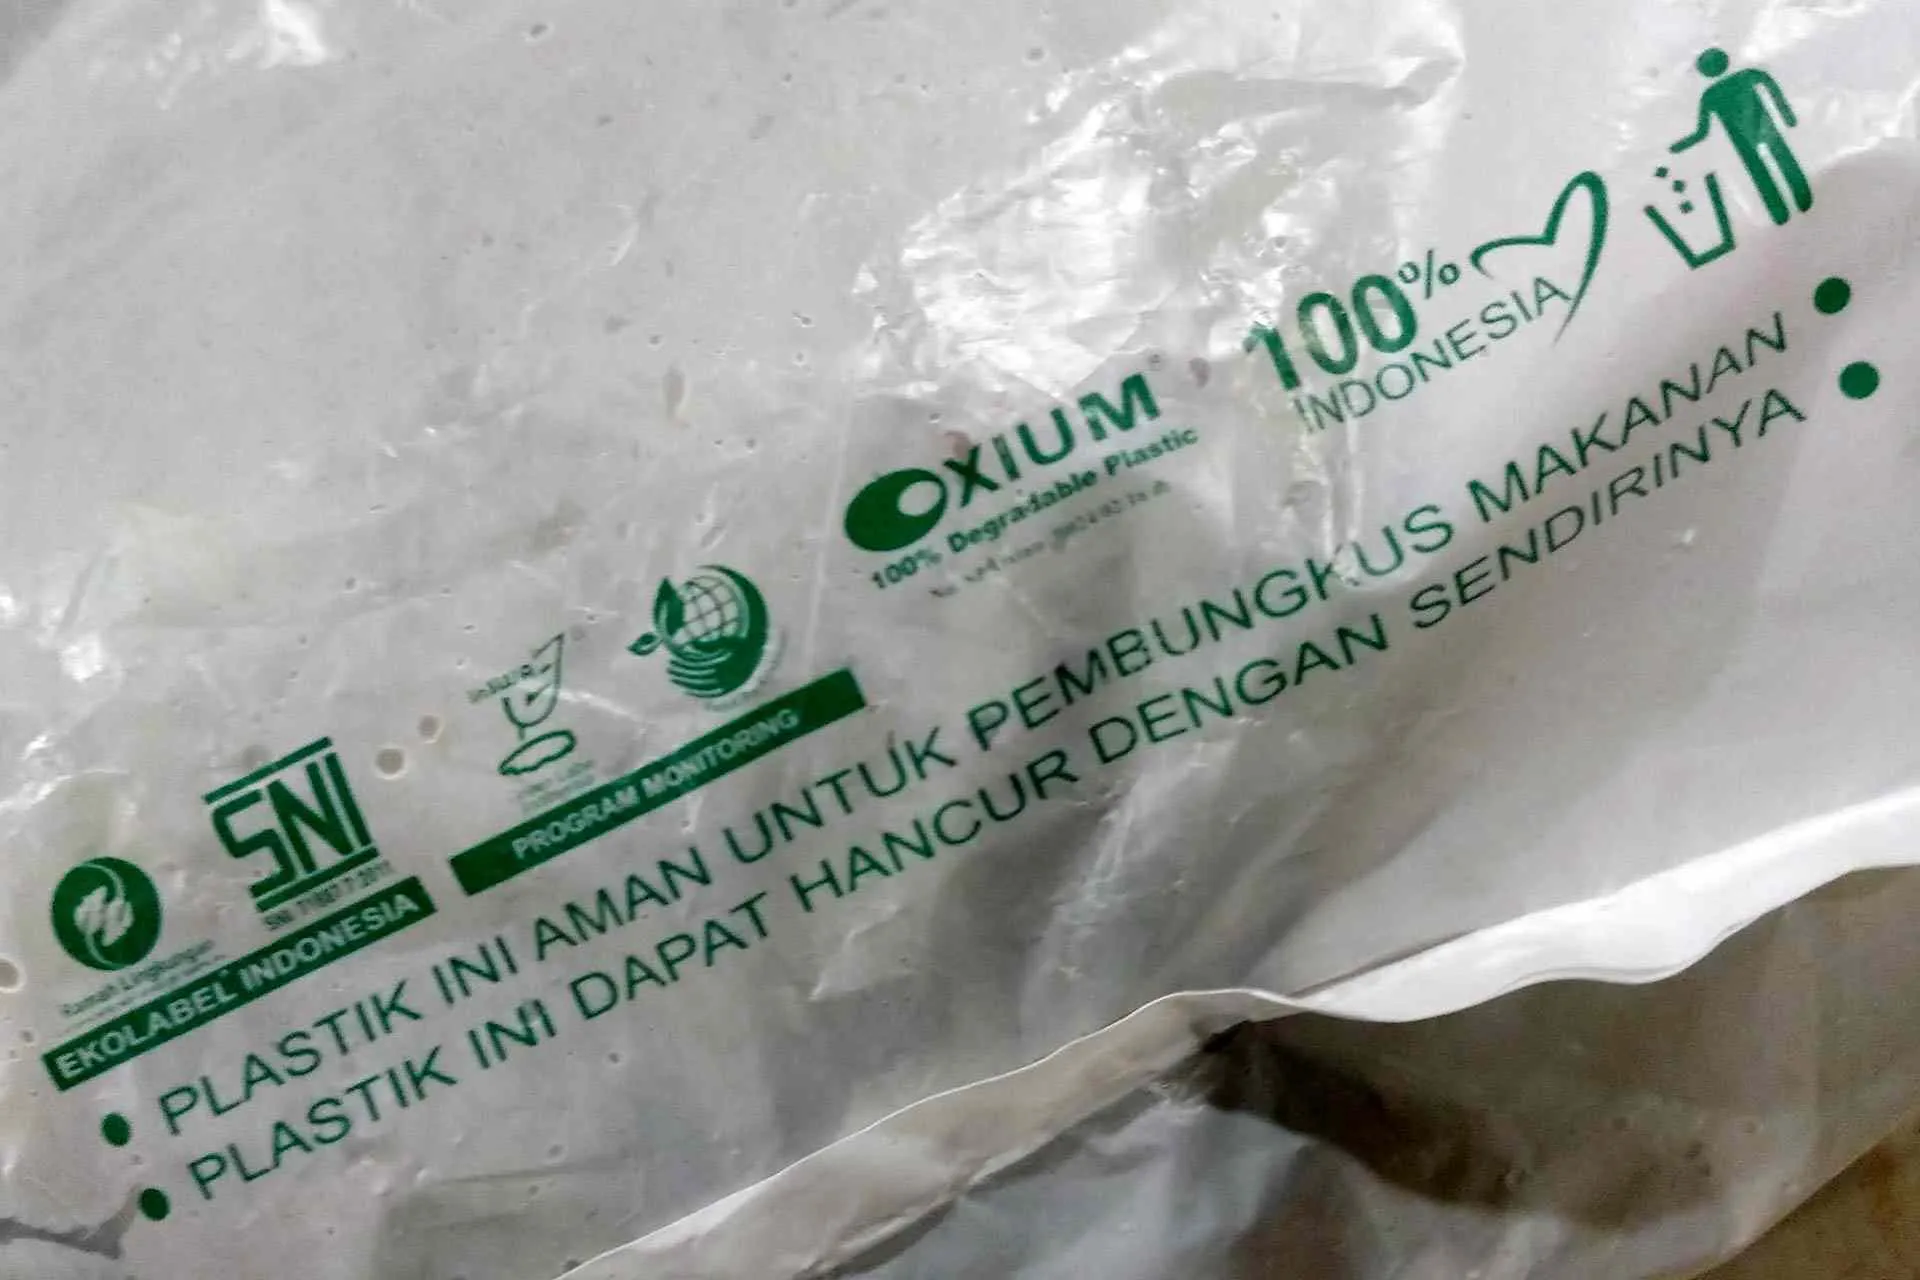 Oxium, Indonesian biodegradable plastic